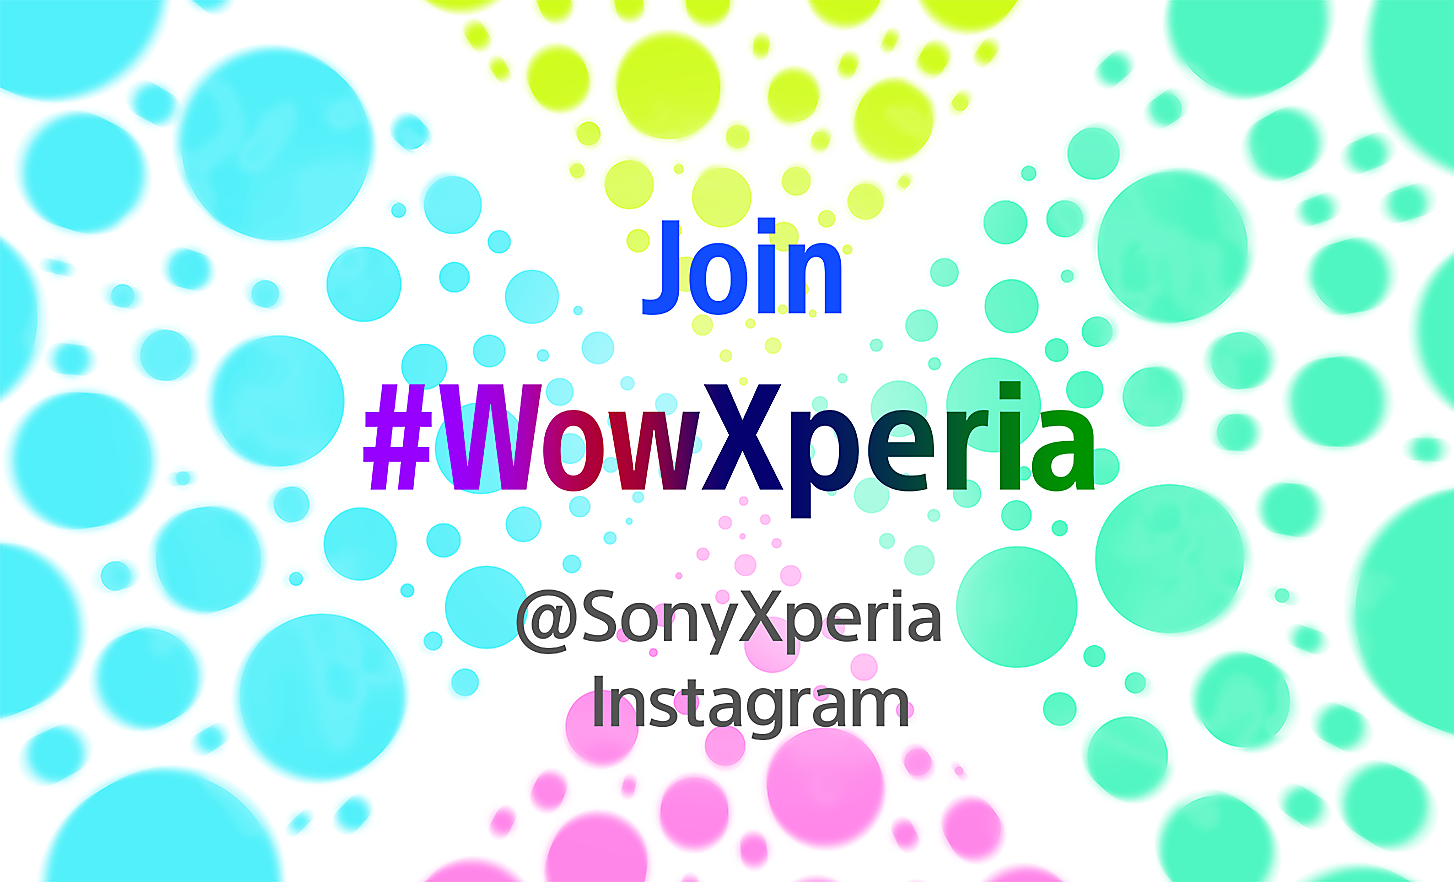 白色背景的圖片，關於如何使用 Xperia 加入 Wow 活動的資訊上，覆蓋著彩色泡泡和社交媒體標籤字樣